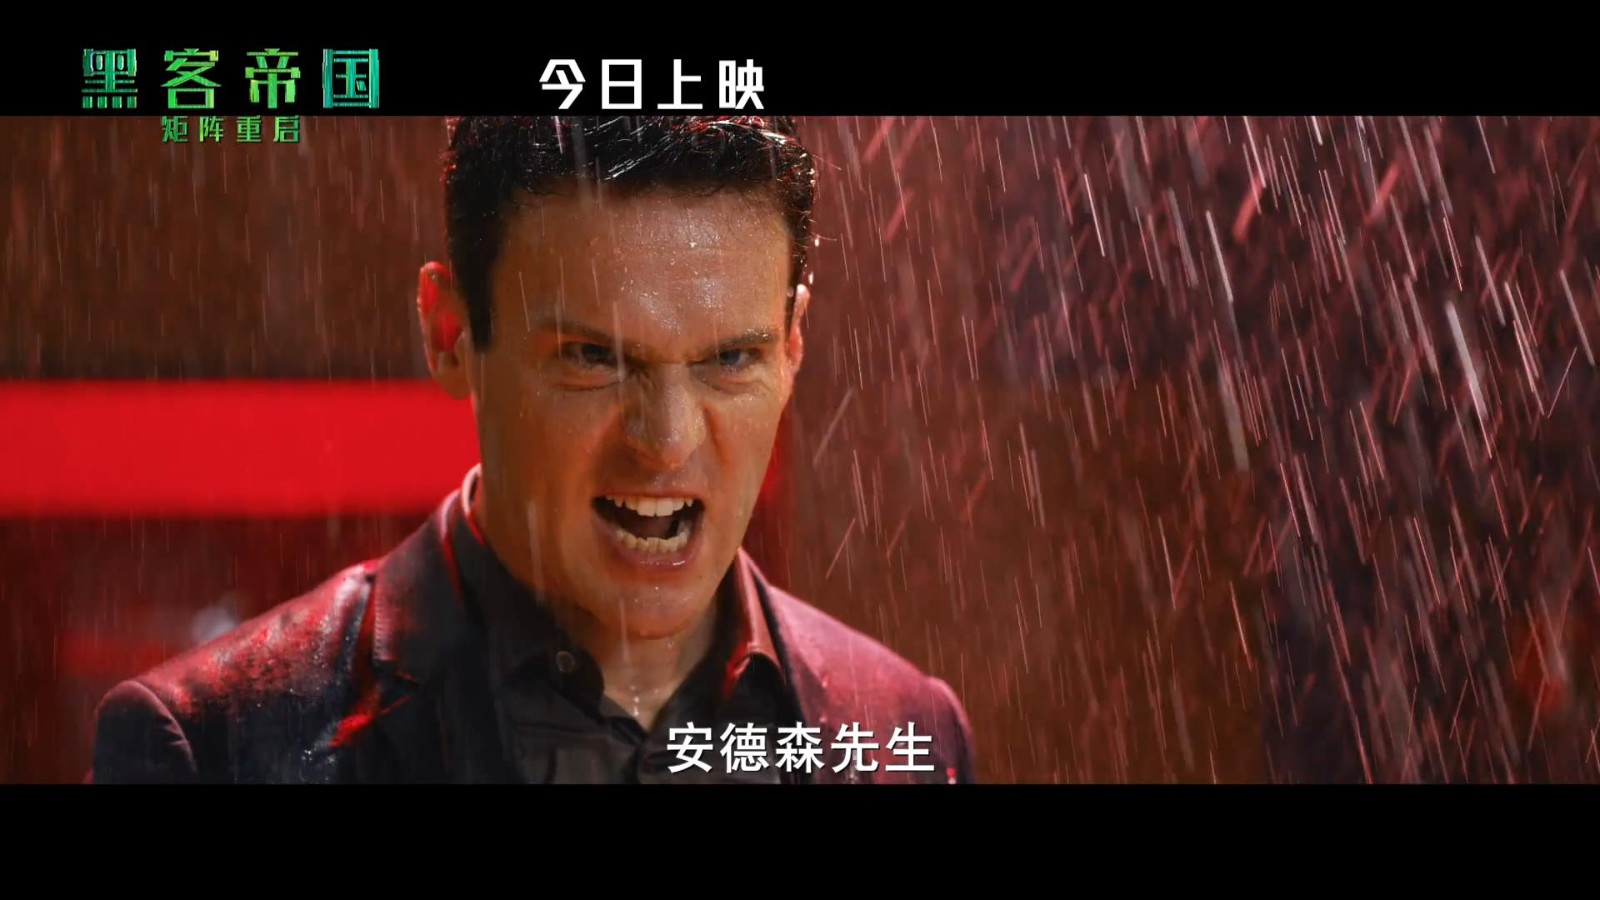 《黑客帝国4》上映预告发布 今日在中国内地上映